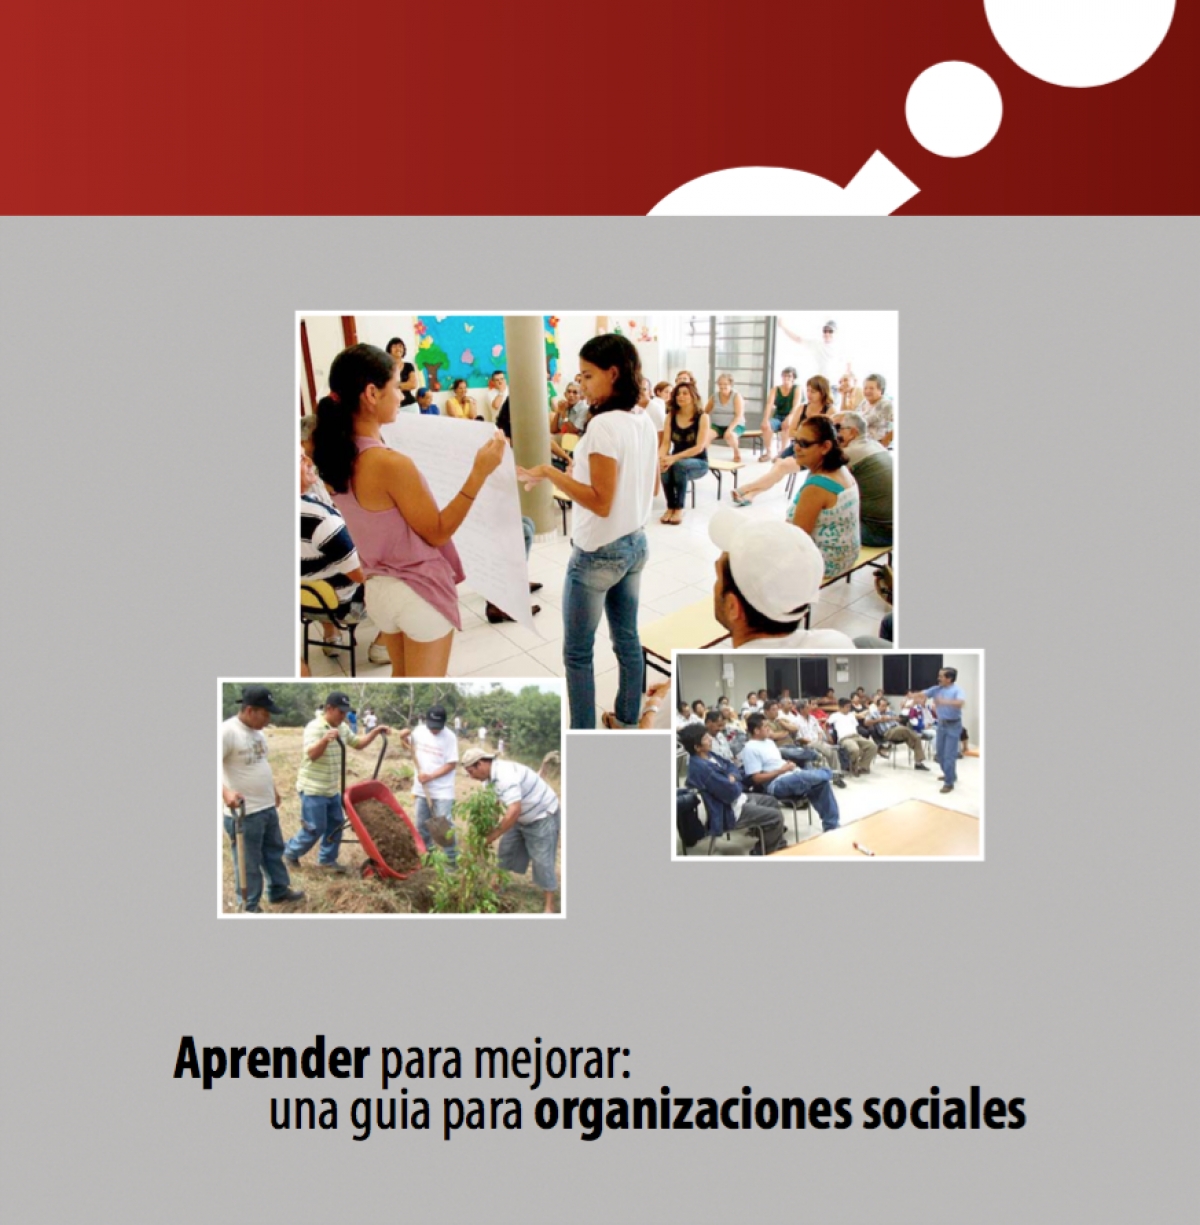 Aprender para mejorar: una guía para organizaciones sociales